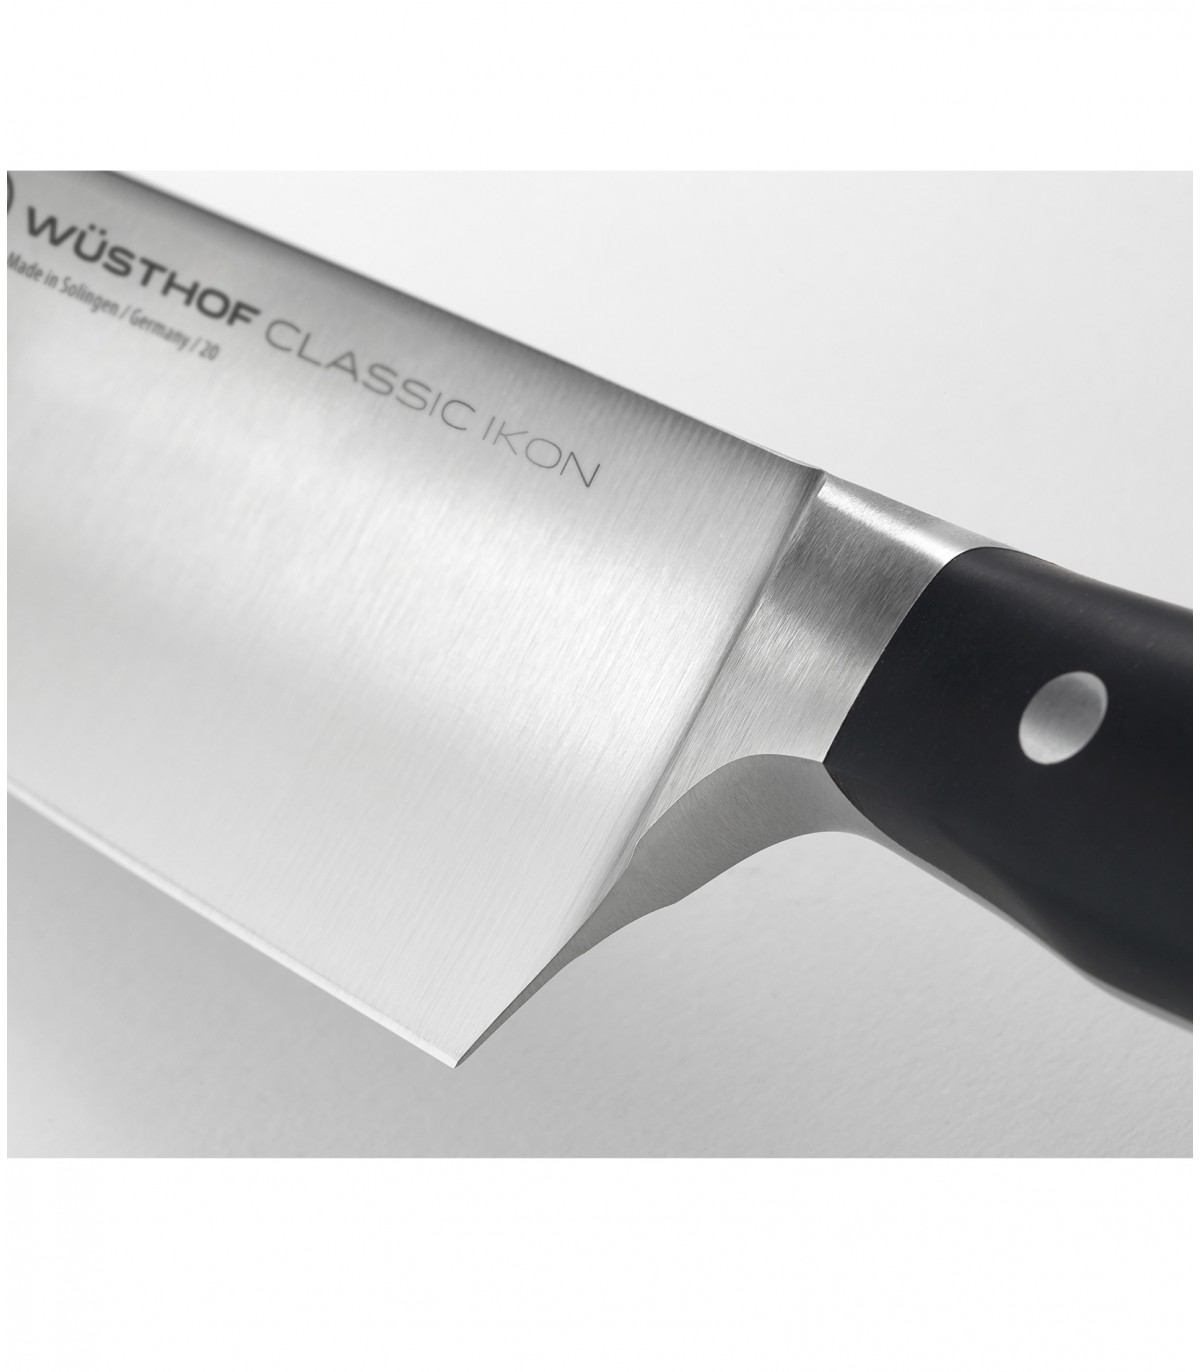 Μαχαίρι Λαχανικών Σεφ 20 εκ. Classic Ikon 4596-20 Wusthof 1040330120  - 1